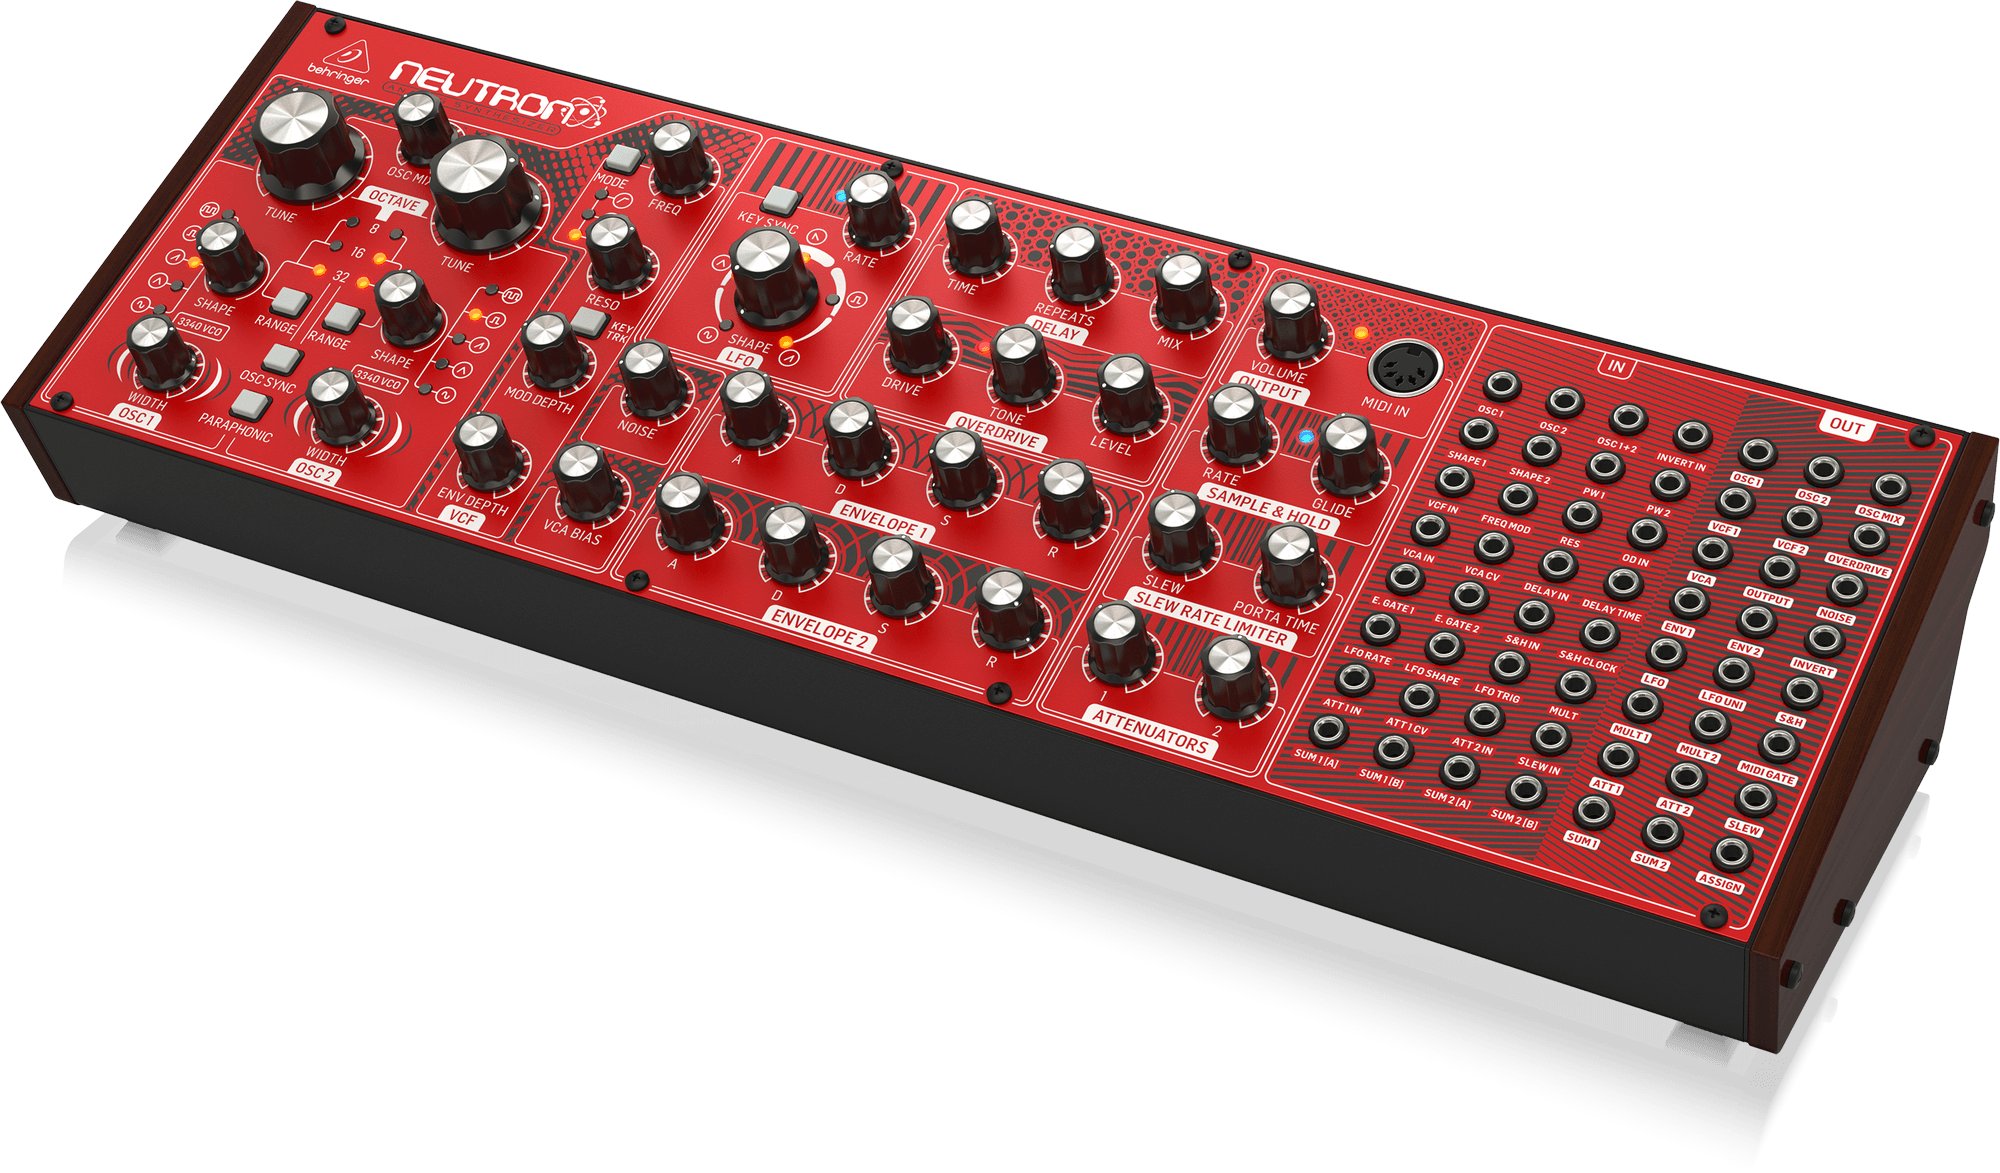 Behringer Neutron - Sintetizador Analógico Semi-modular - Confira - Classic  Keyboards - Especialistas em Teclados